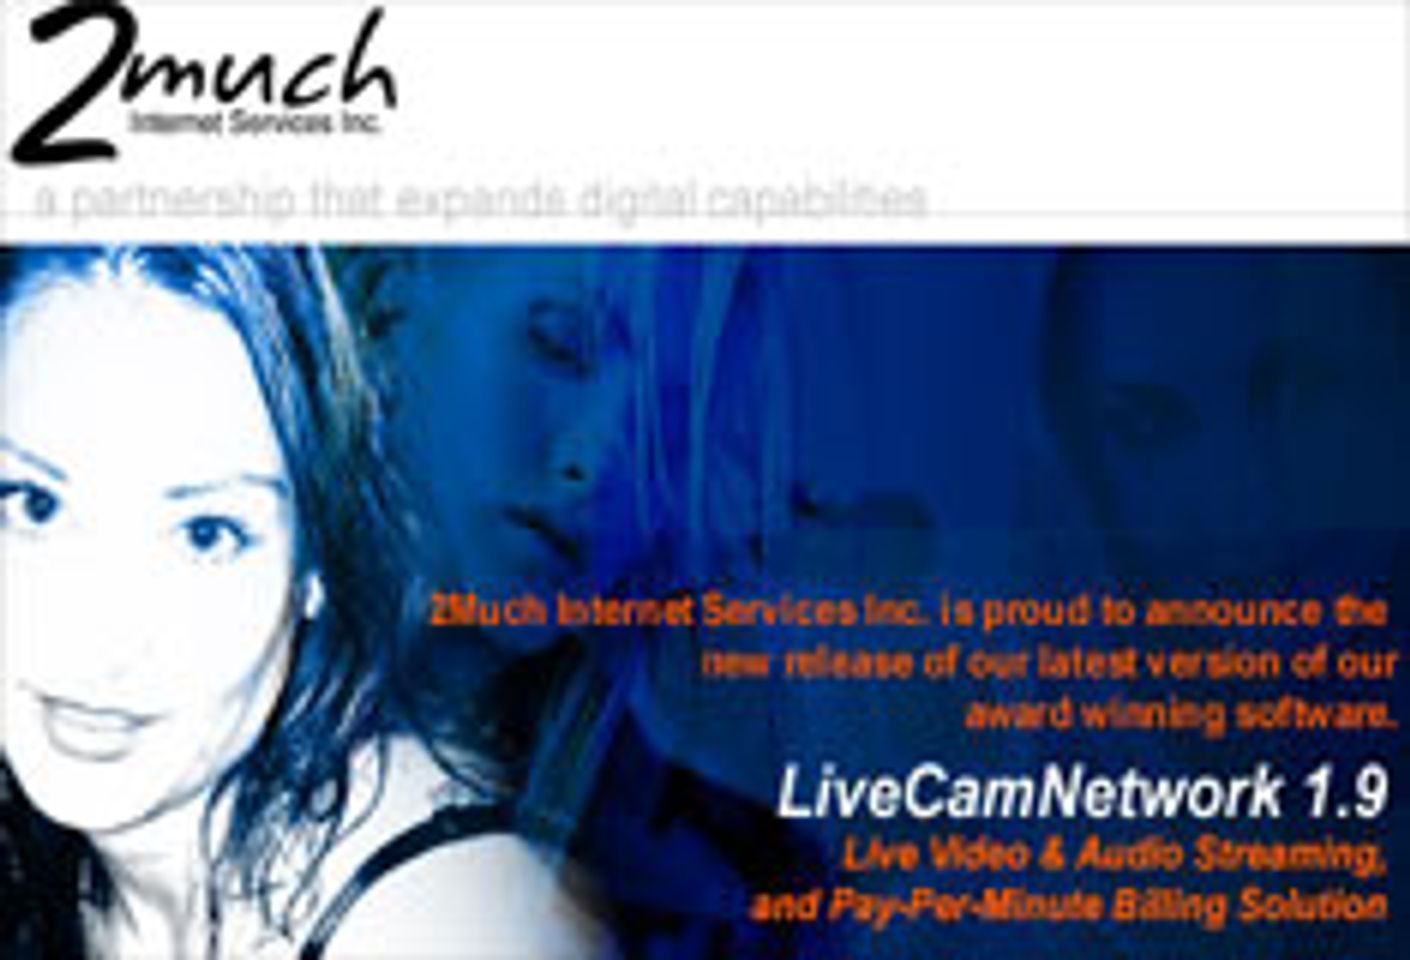 2Much Internet Services Survives Payment Standstill